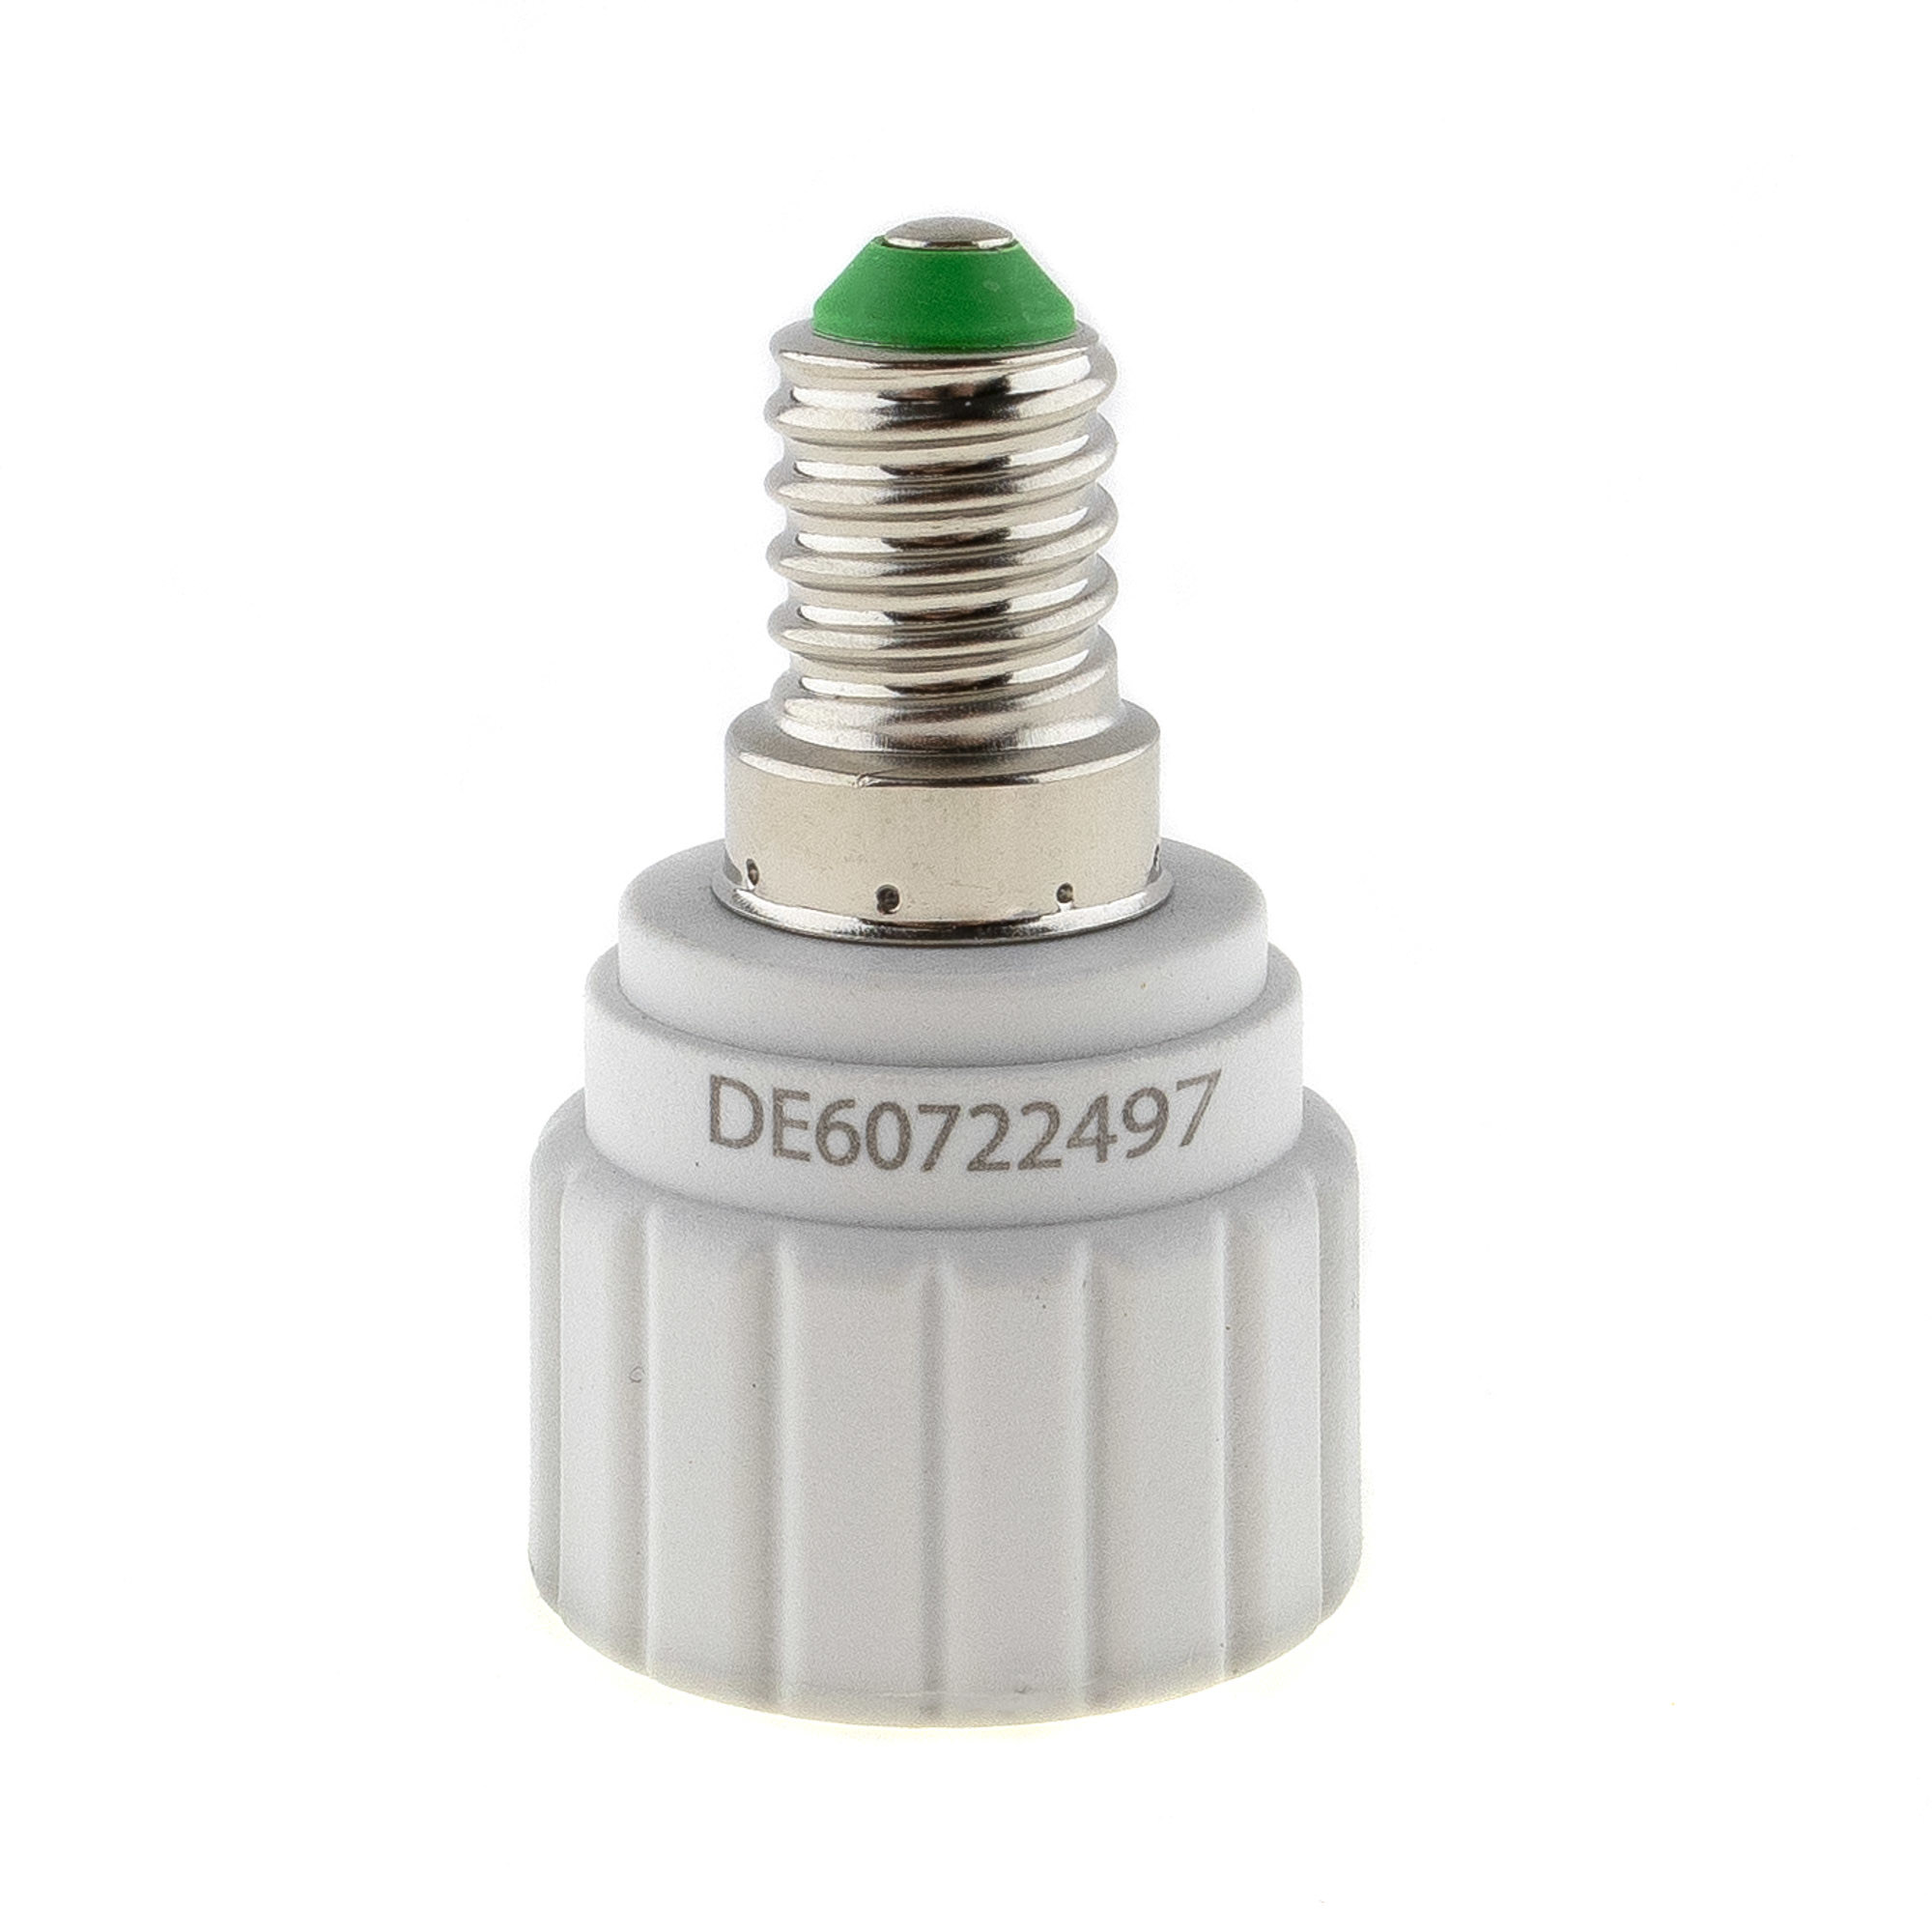 Lamp socket adaptor E14 to GU10 - 4PCS